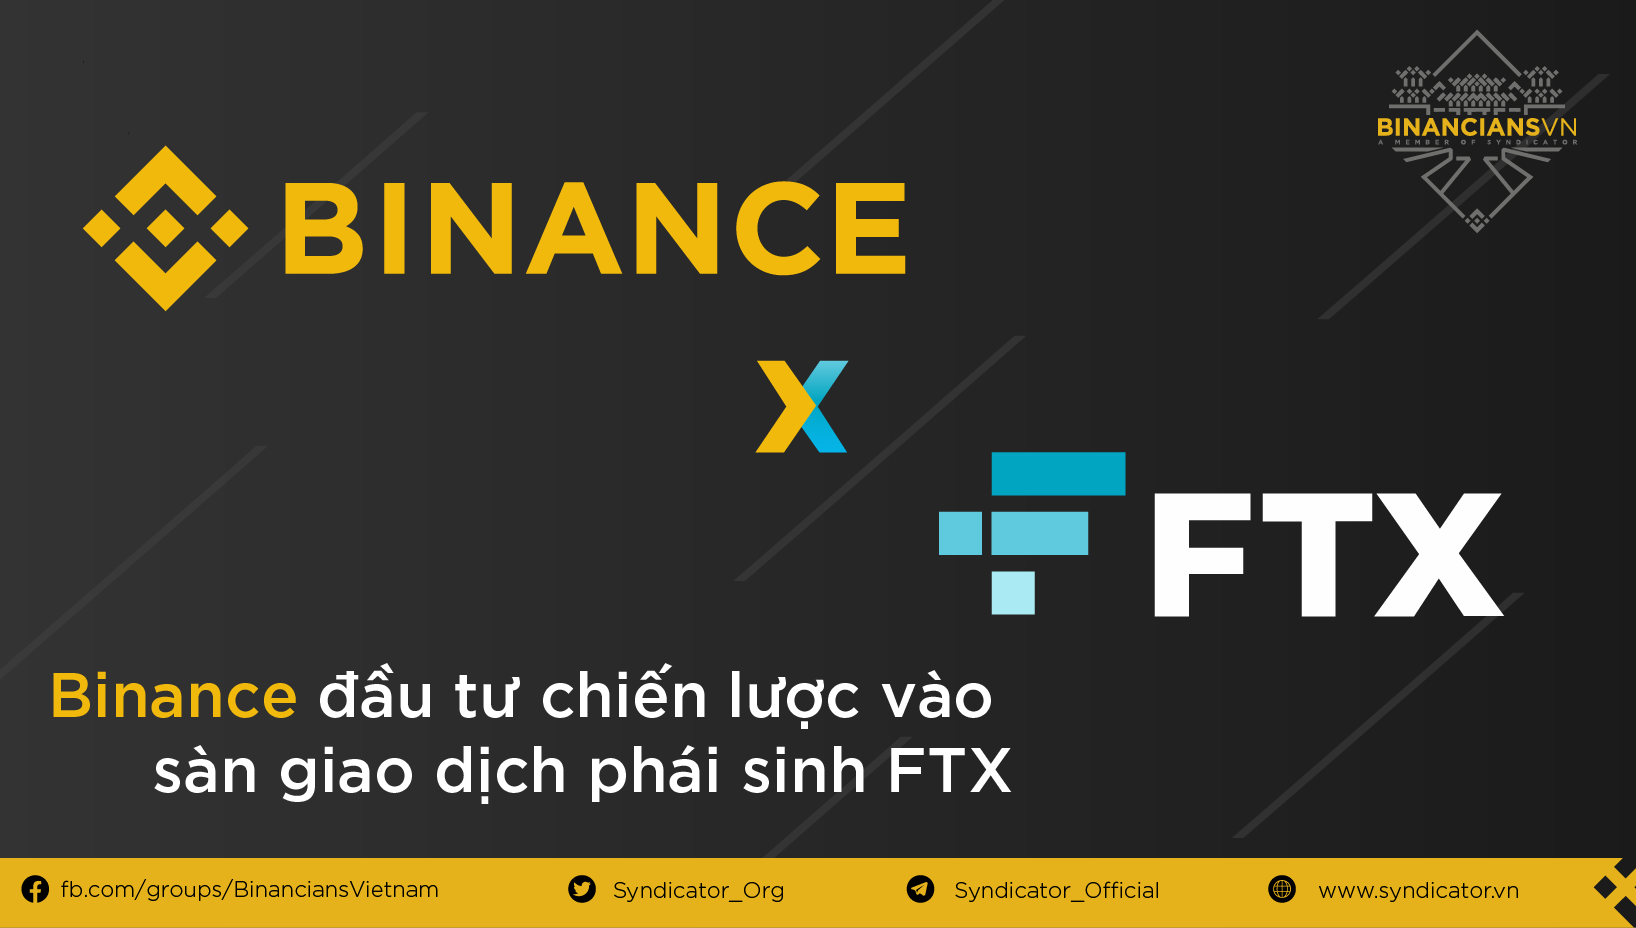 Binance công bố việc đầu tư chiến lược vào sàn giao dịch phái sinh FTX